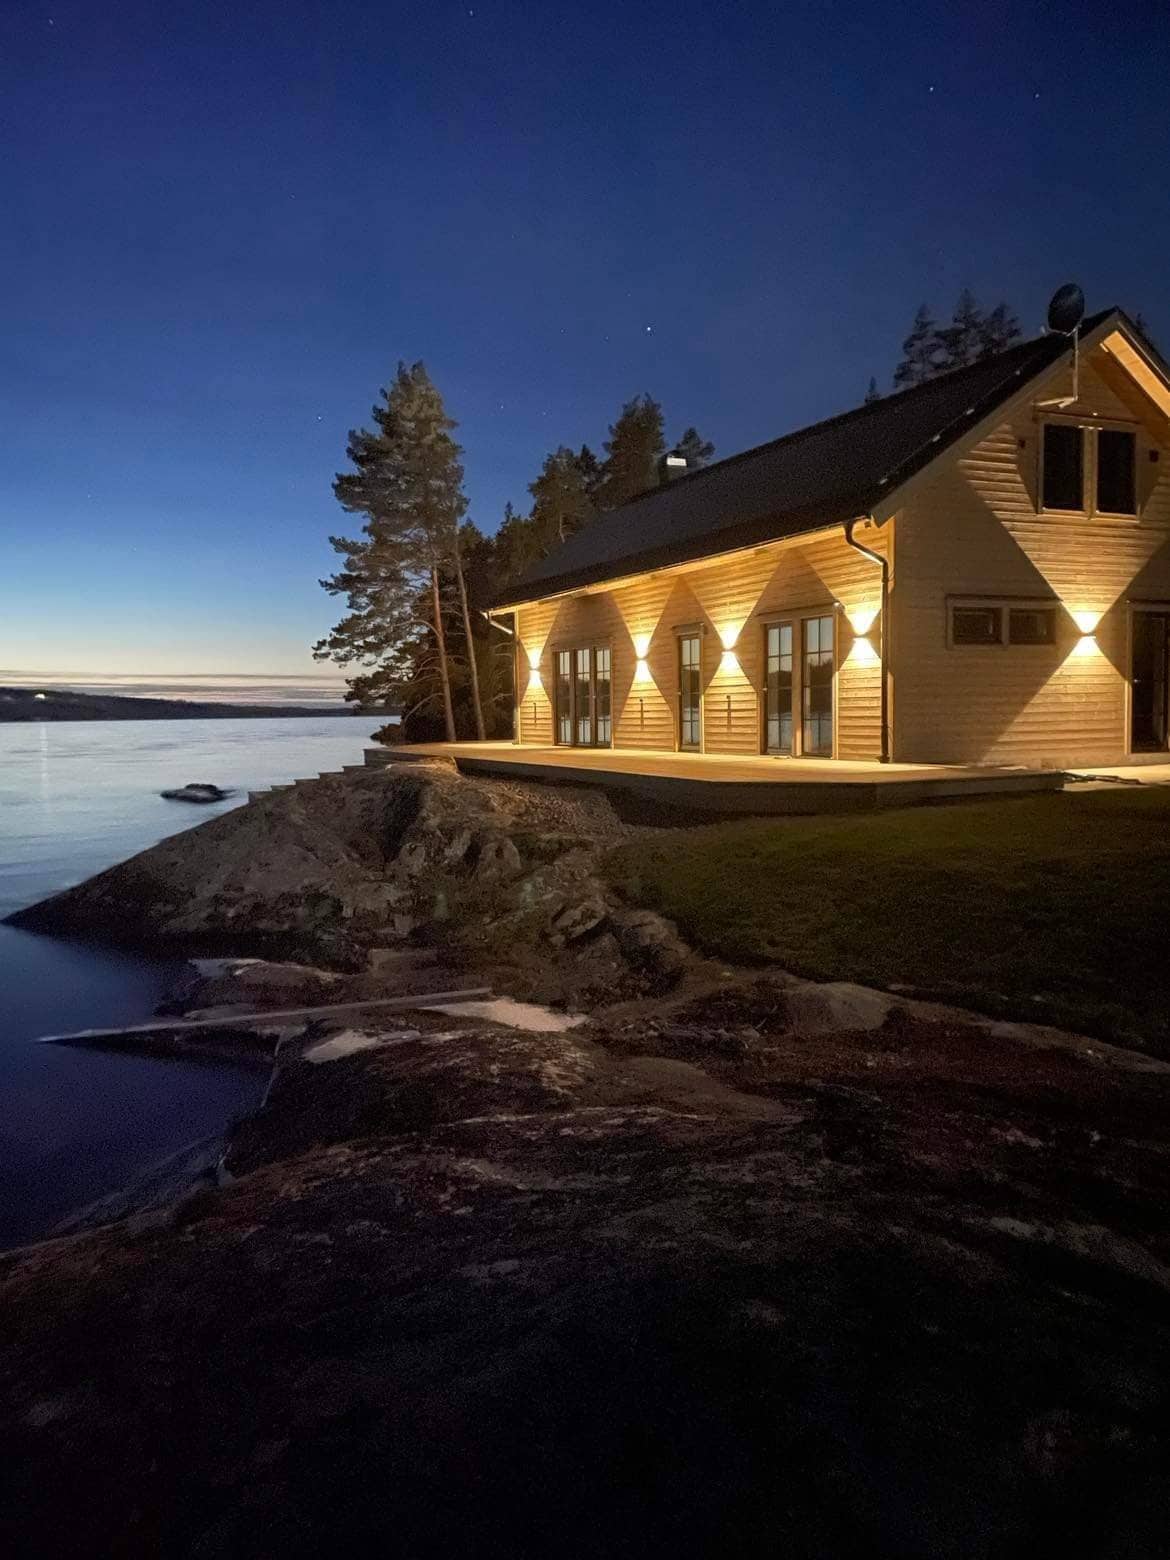 Uvamoen是一栋独一无二的房子，拥有湖畔房源和独立海滩。